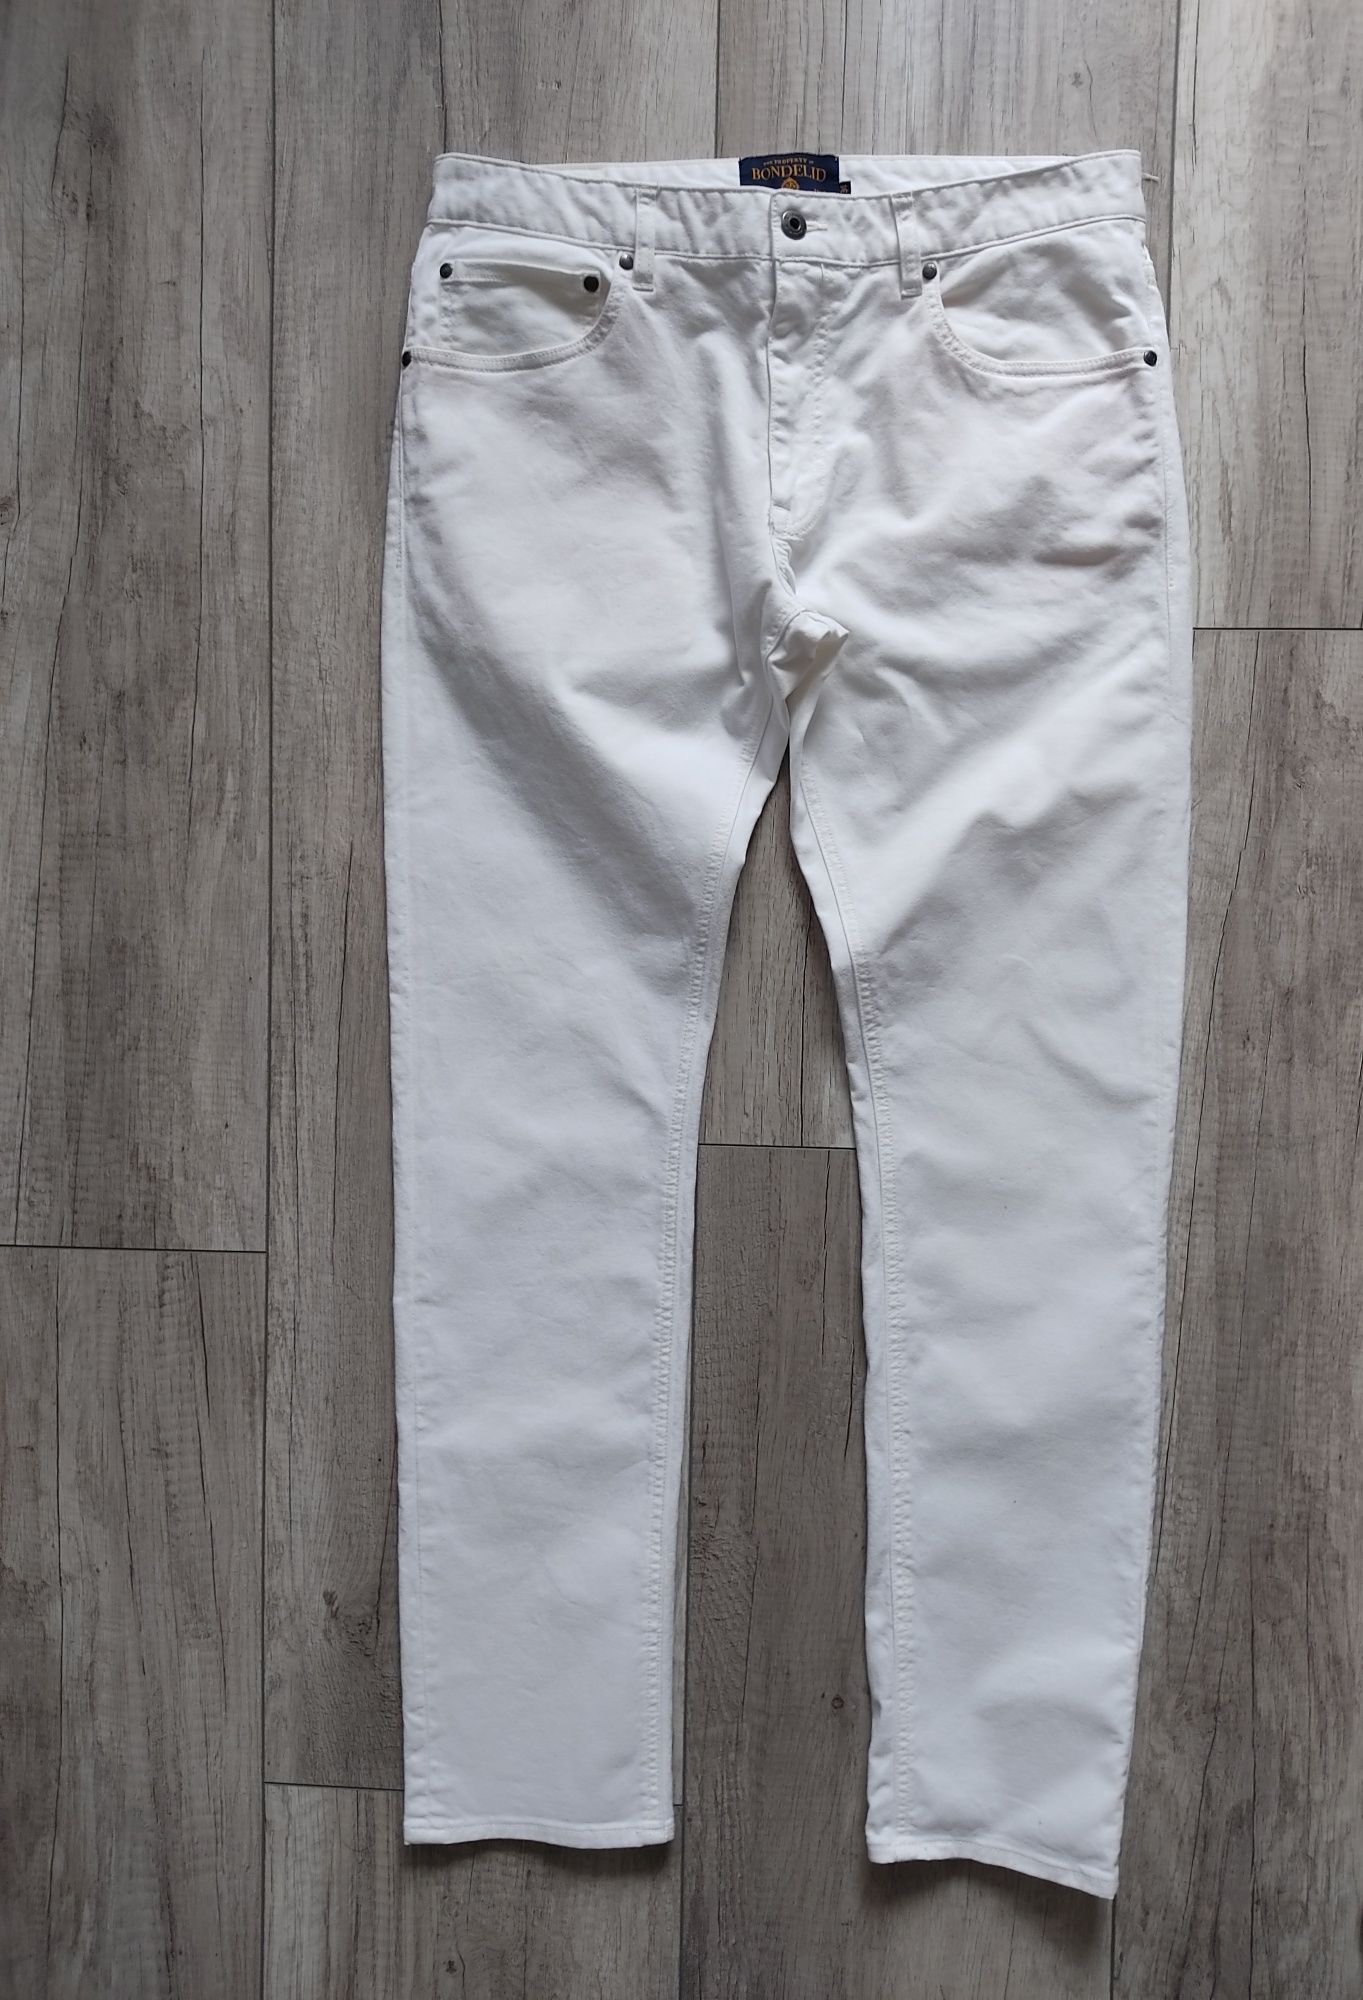 Spodnie męskie białe Bondelid L